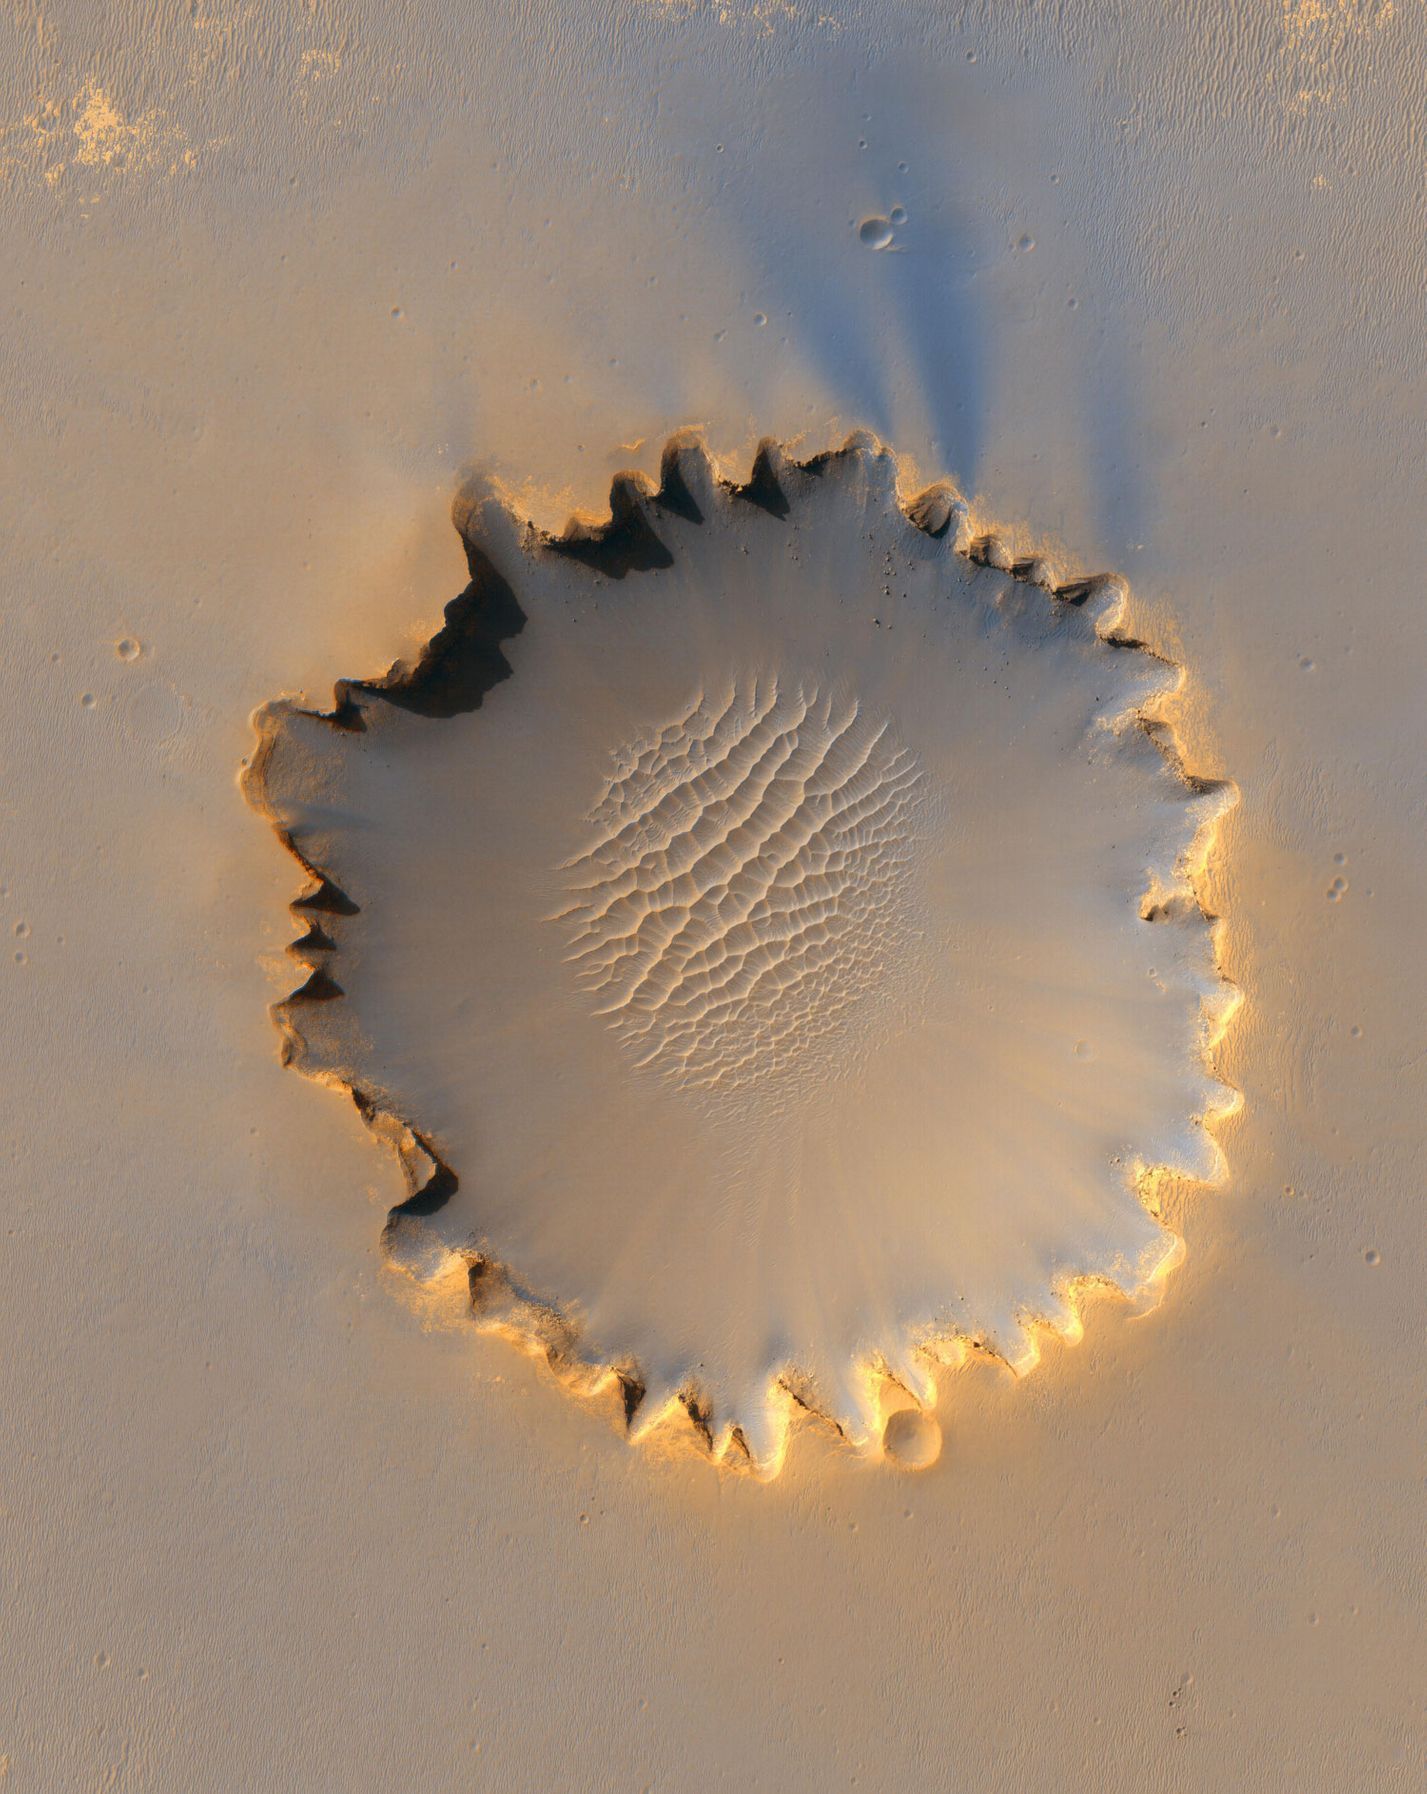 Mars - kráter Victoria